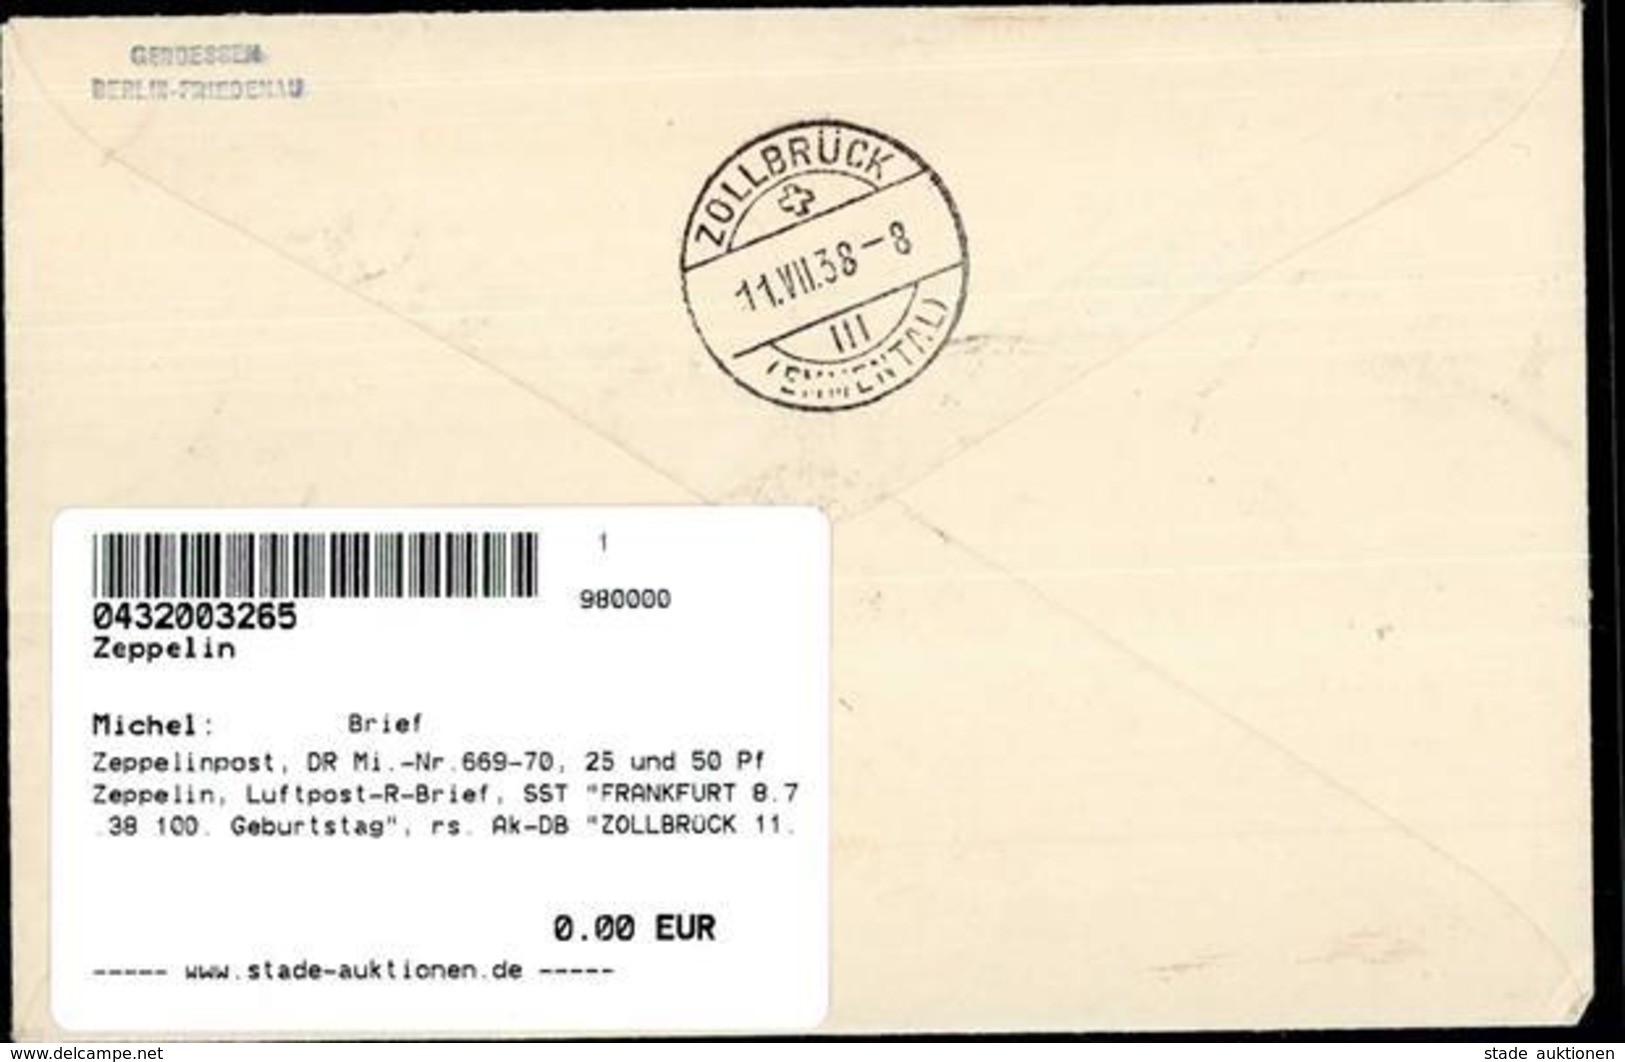 Zeppelinpost, DR Mi.-Nr.669-70, 25 Und 50 Pf Zeppelin, Luftpost-R-Brief, SST FRANKFURT 8.7.38 100. Geburtstag", Rs. Ak-D - Zeppeline